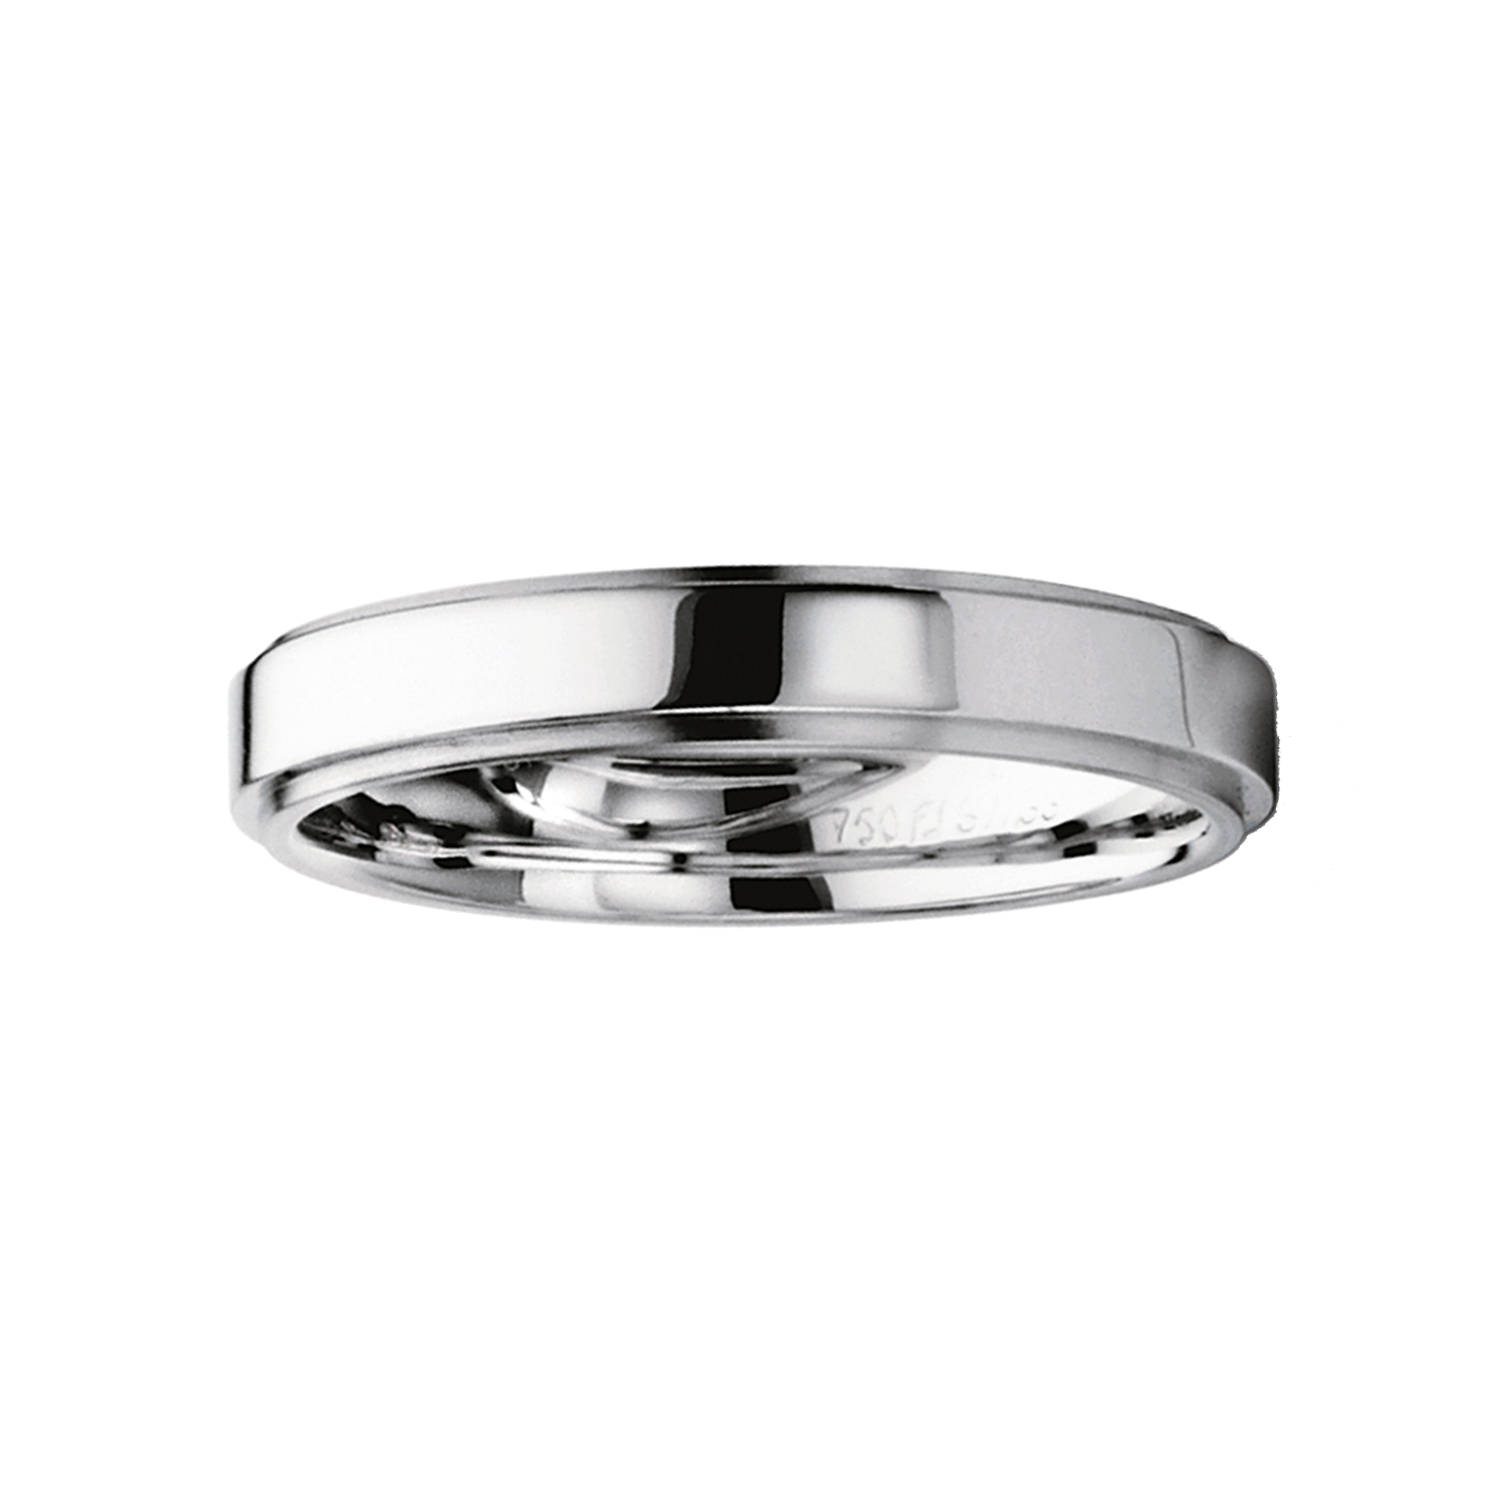  FURRER JACOT, Wedding rings, SKU: 71-28110-0-0/040-74-0-63-0 | watchphilosophy.co.uk